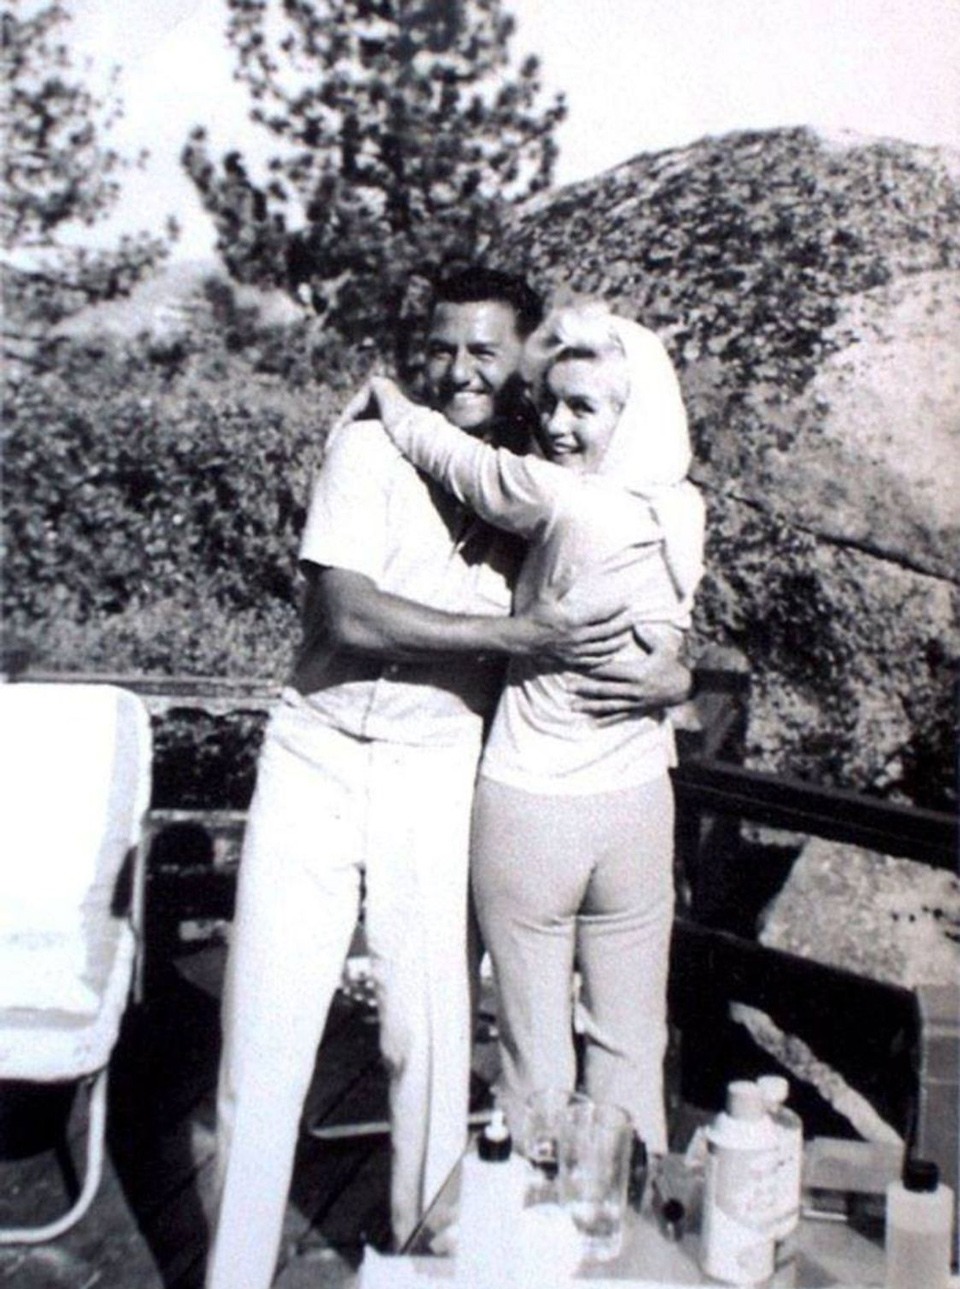 آخر صورة معروفة لـ(مارلين مونرو). تظهر هذه الصورة (مارلين مونرو) رفقة عازف البيانو (بادي غريكو) في أغسطس 1962 قبل أيام من وفاتها.